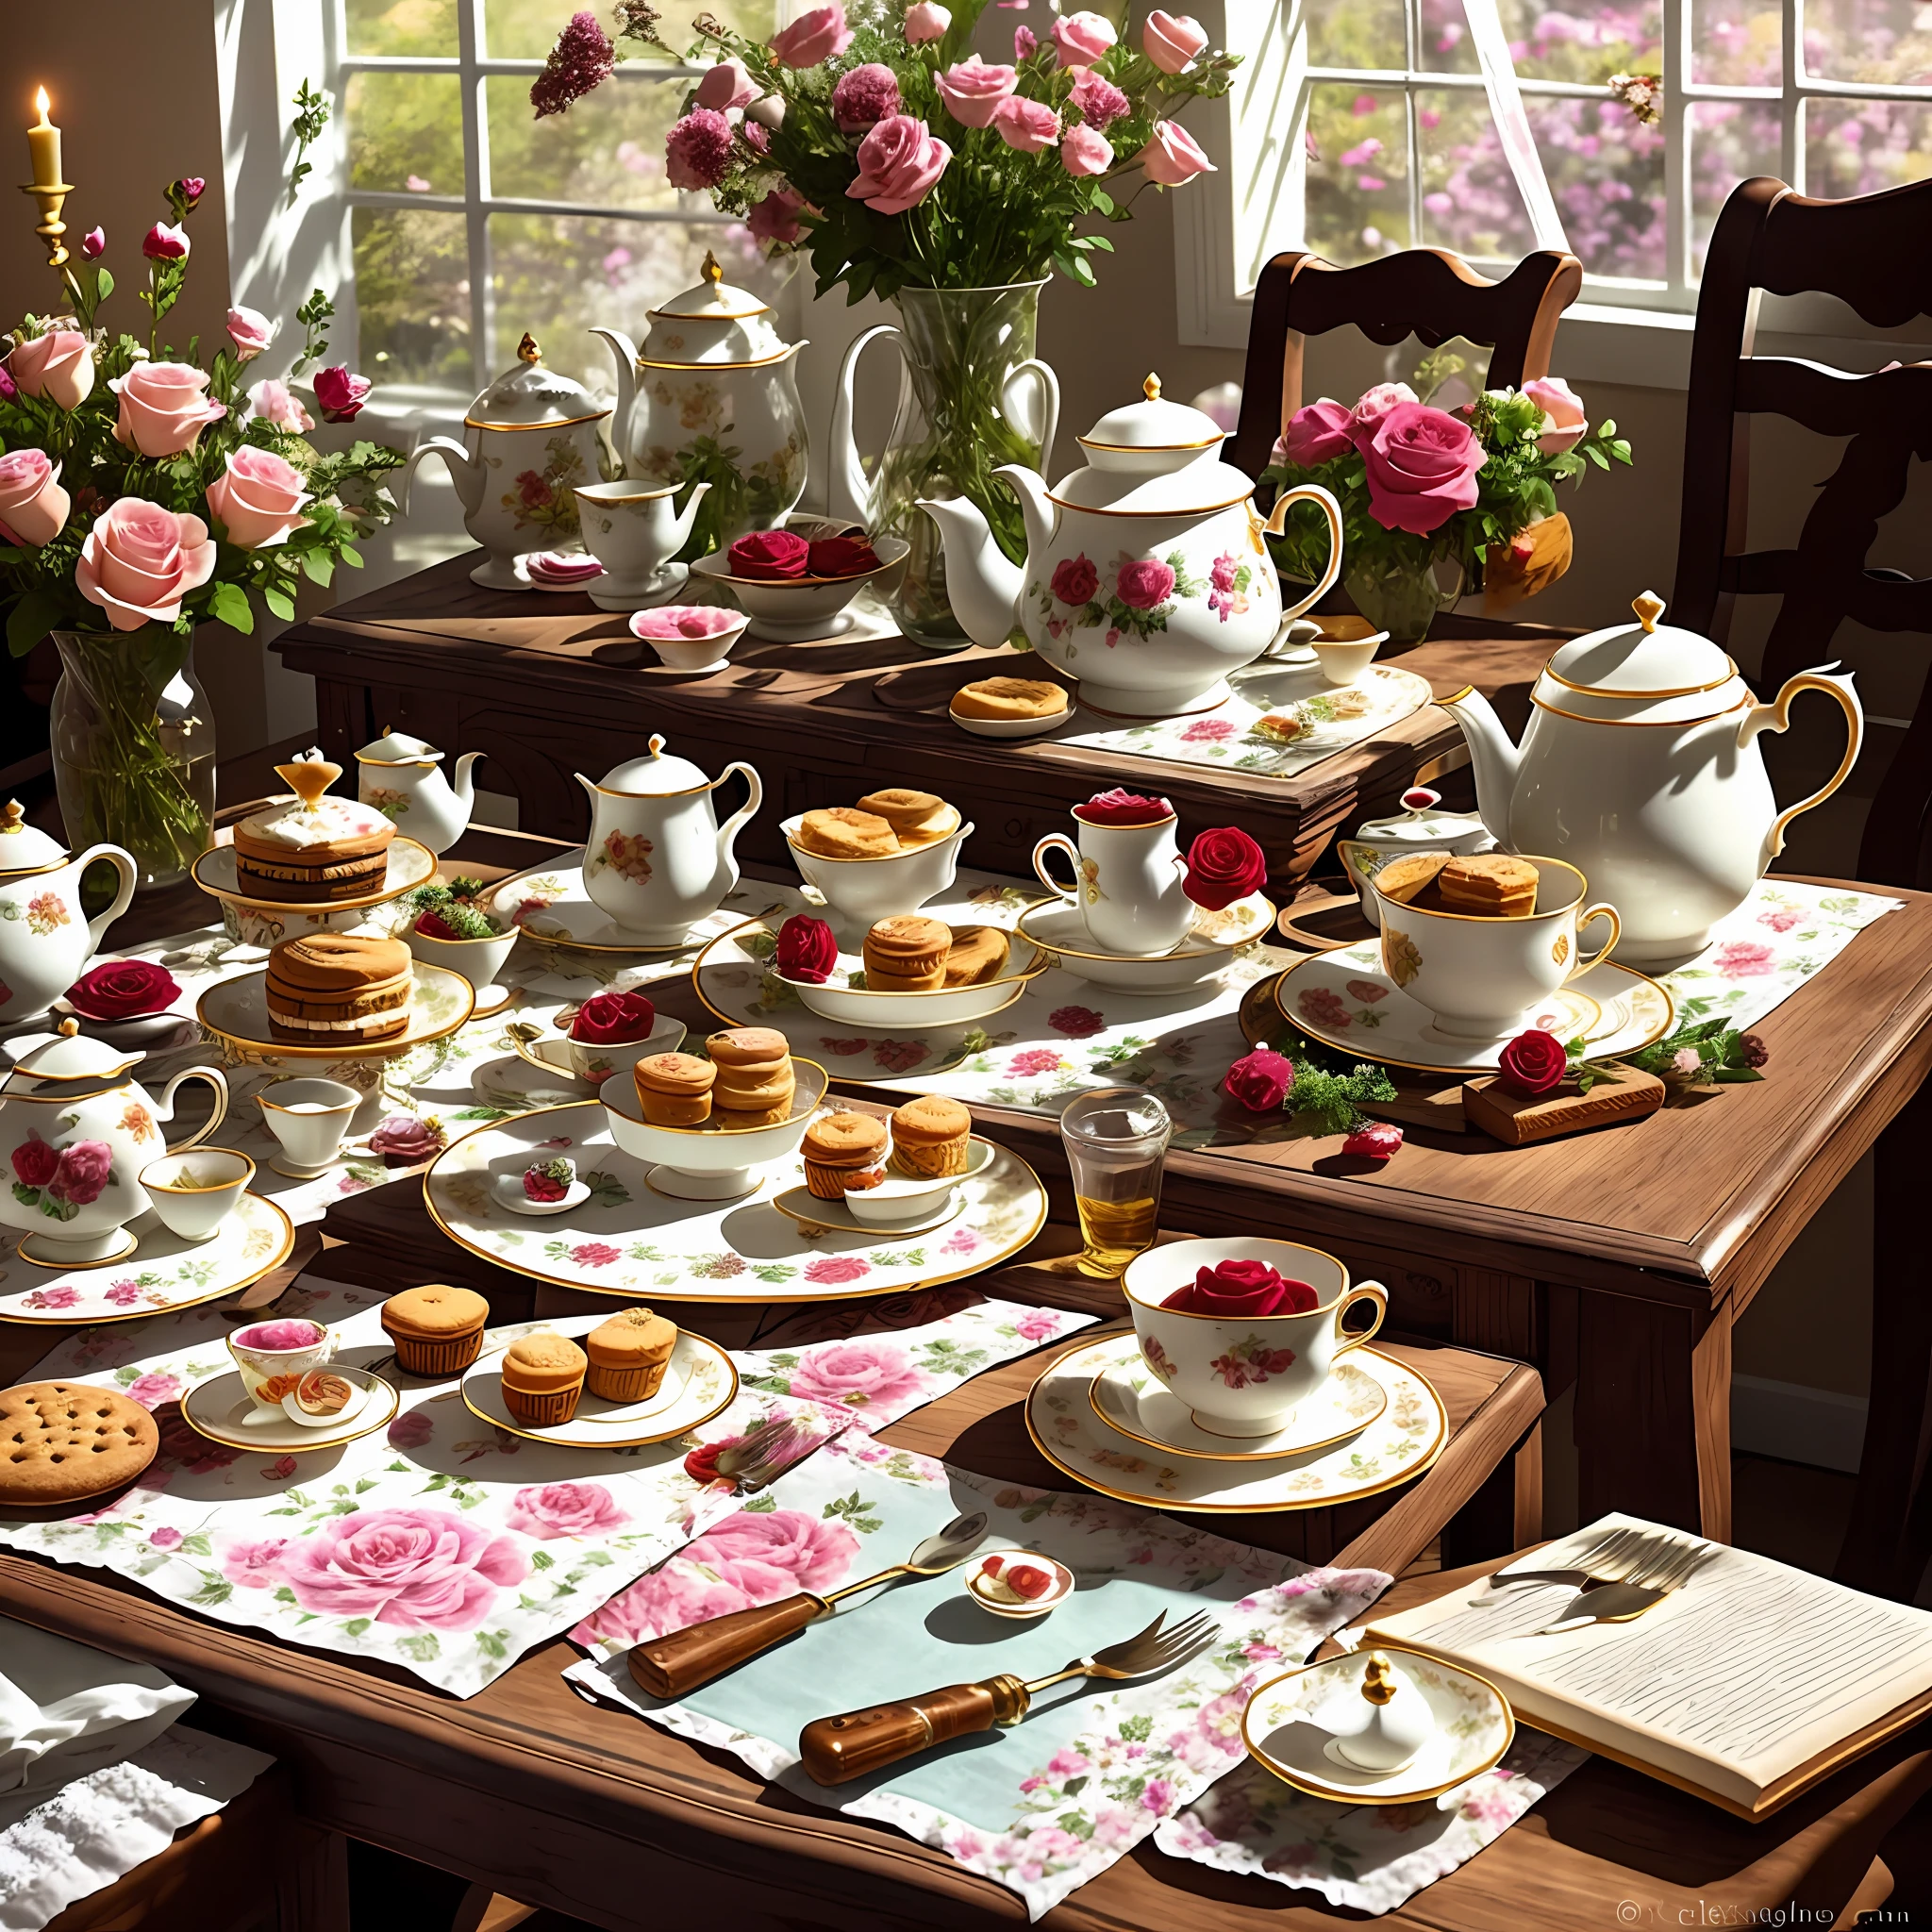 Uma mesa com bolos, biscoitos e refrescos, um vaso no canto superior esquerdo com algumas lindas rosas inseridas nele, Xícaras e bules europeus em cima da mesa, Chá da Tarde Europeu, o sol da tarde brilhando, imagem requintada e bonita